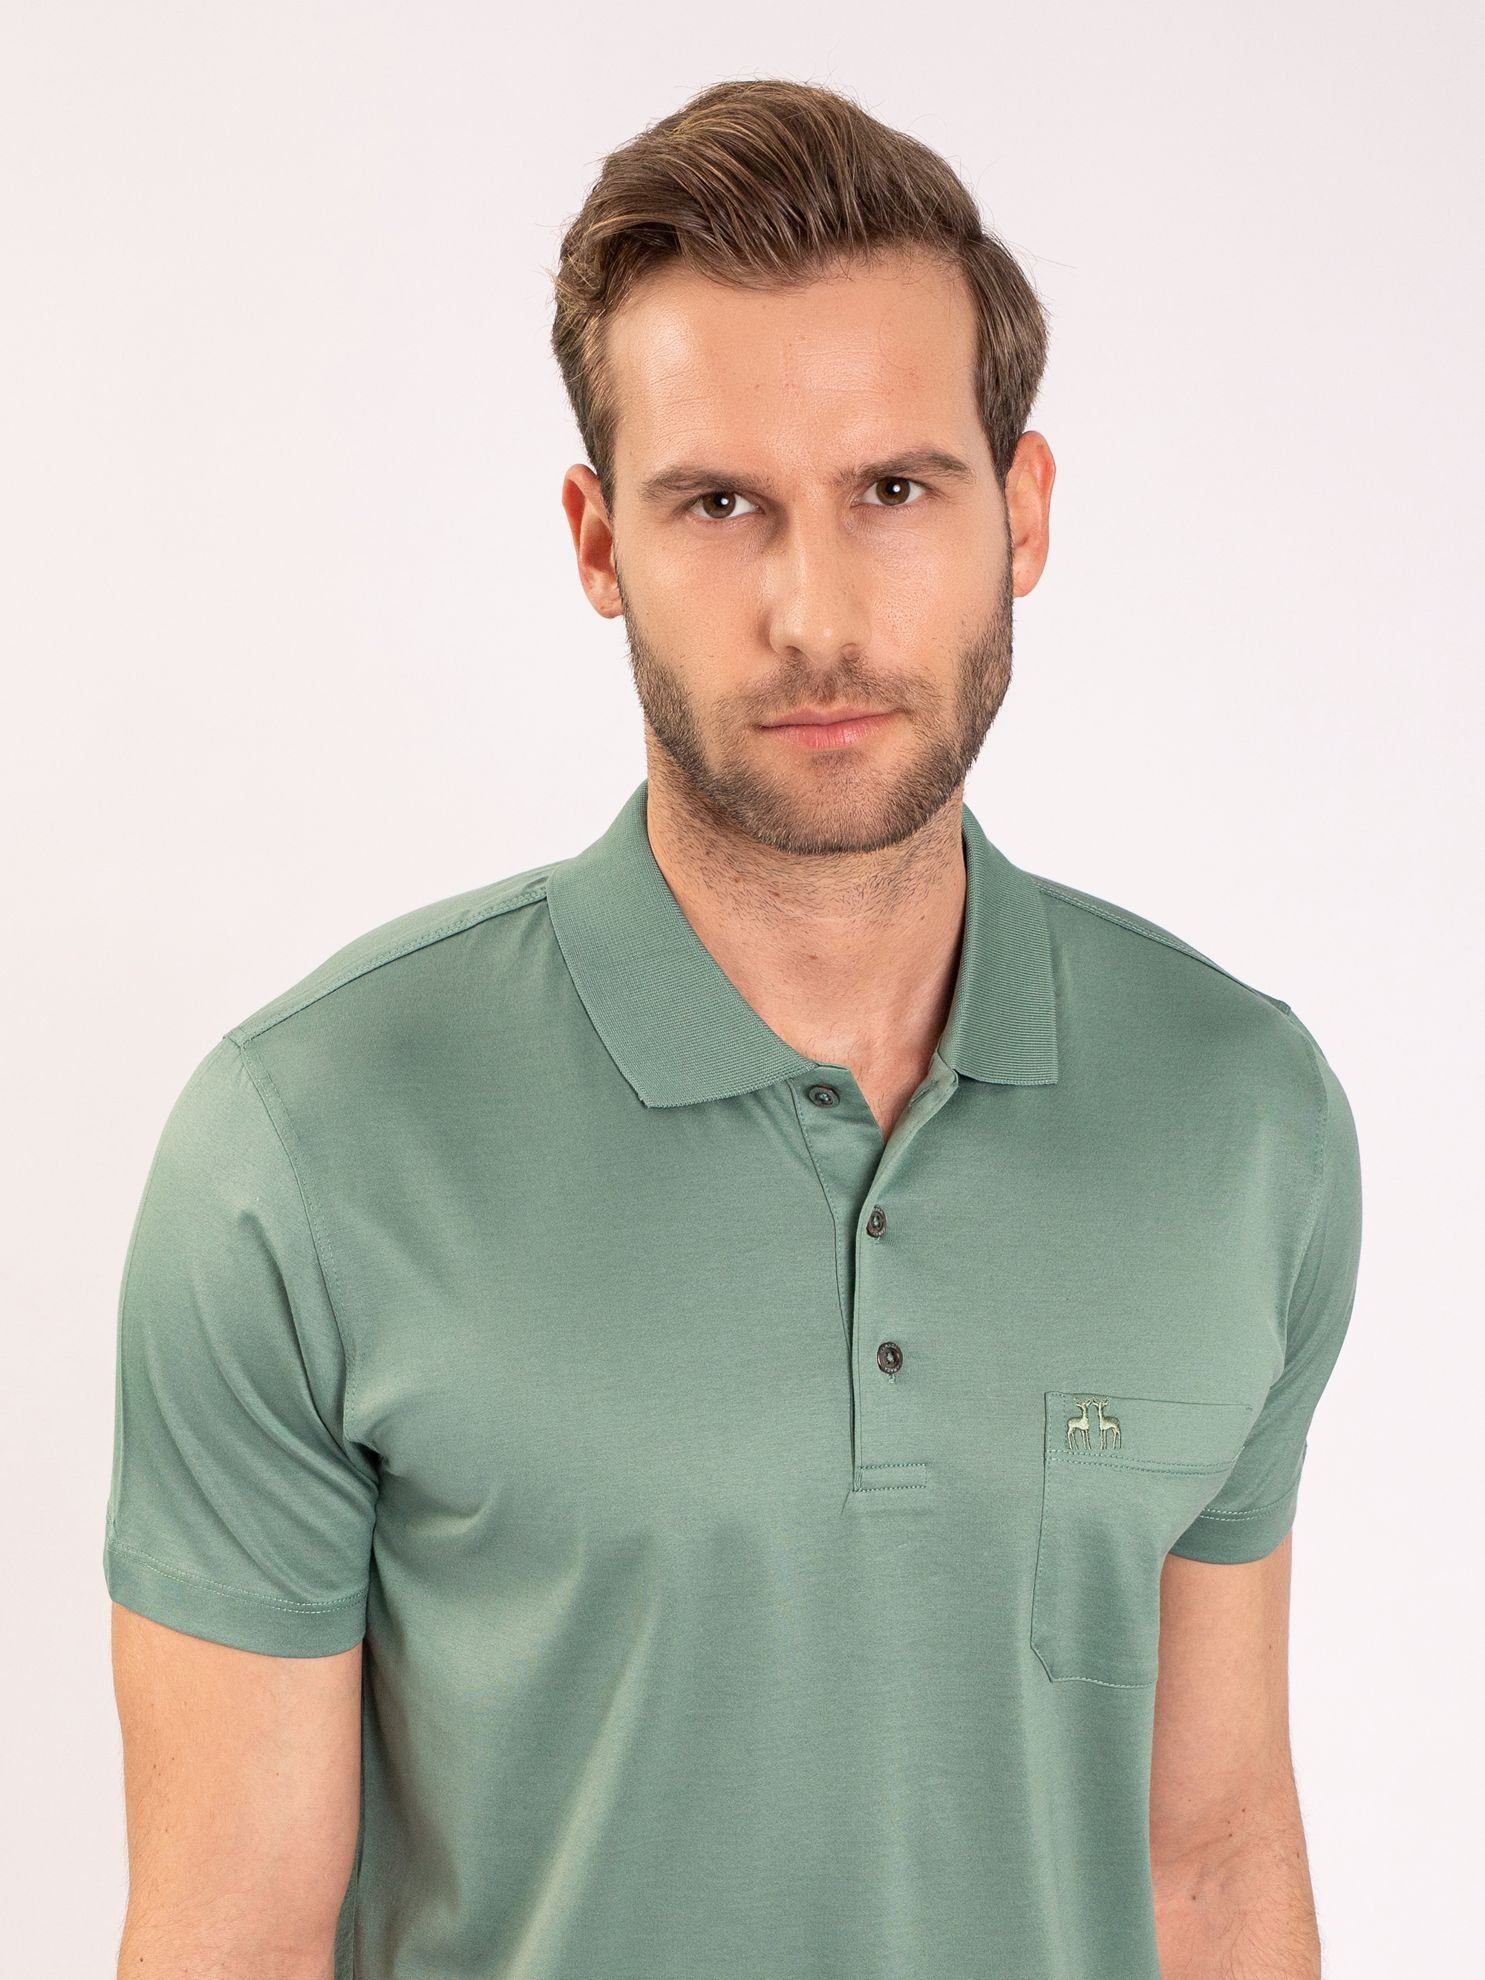 Cift Geyik Karaca Poloshirt »Herren - Regular Fit - Basic - Poloshirt«  Kleines Logo auf der Brust, mit lizenziertem Originaldesign online kaufen |  OTTO